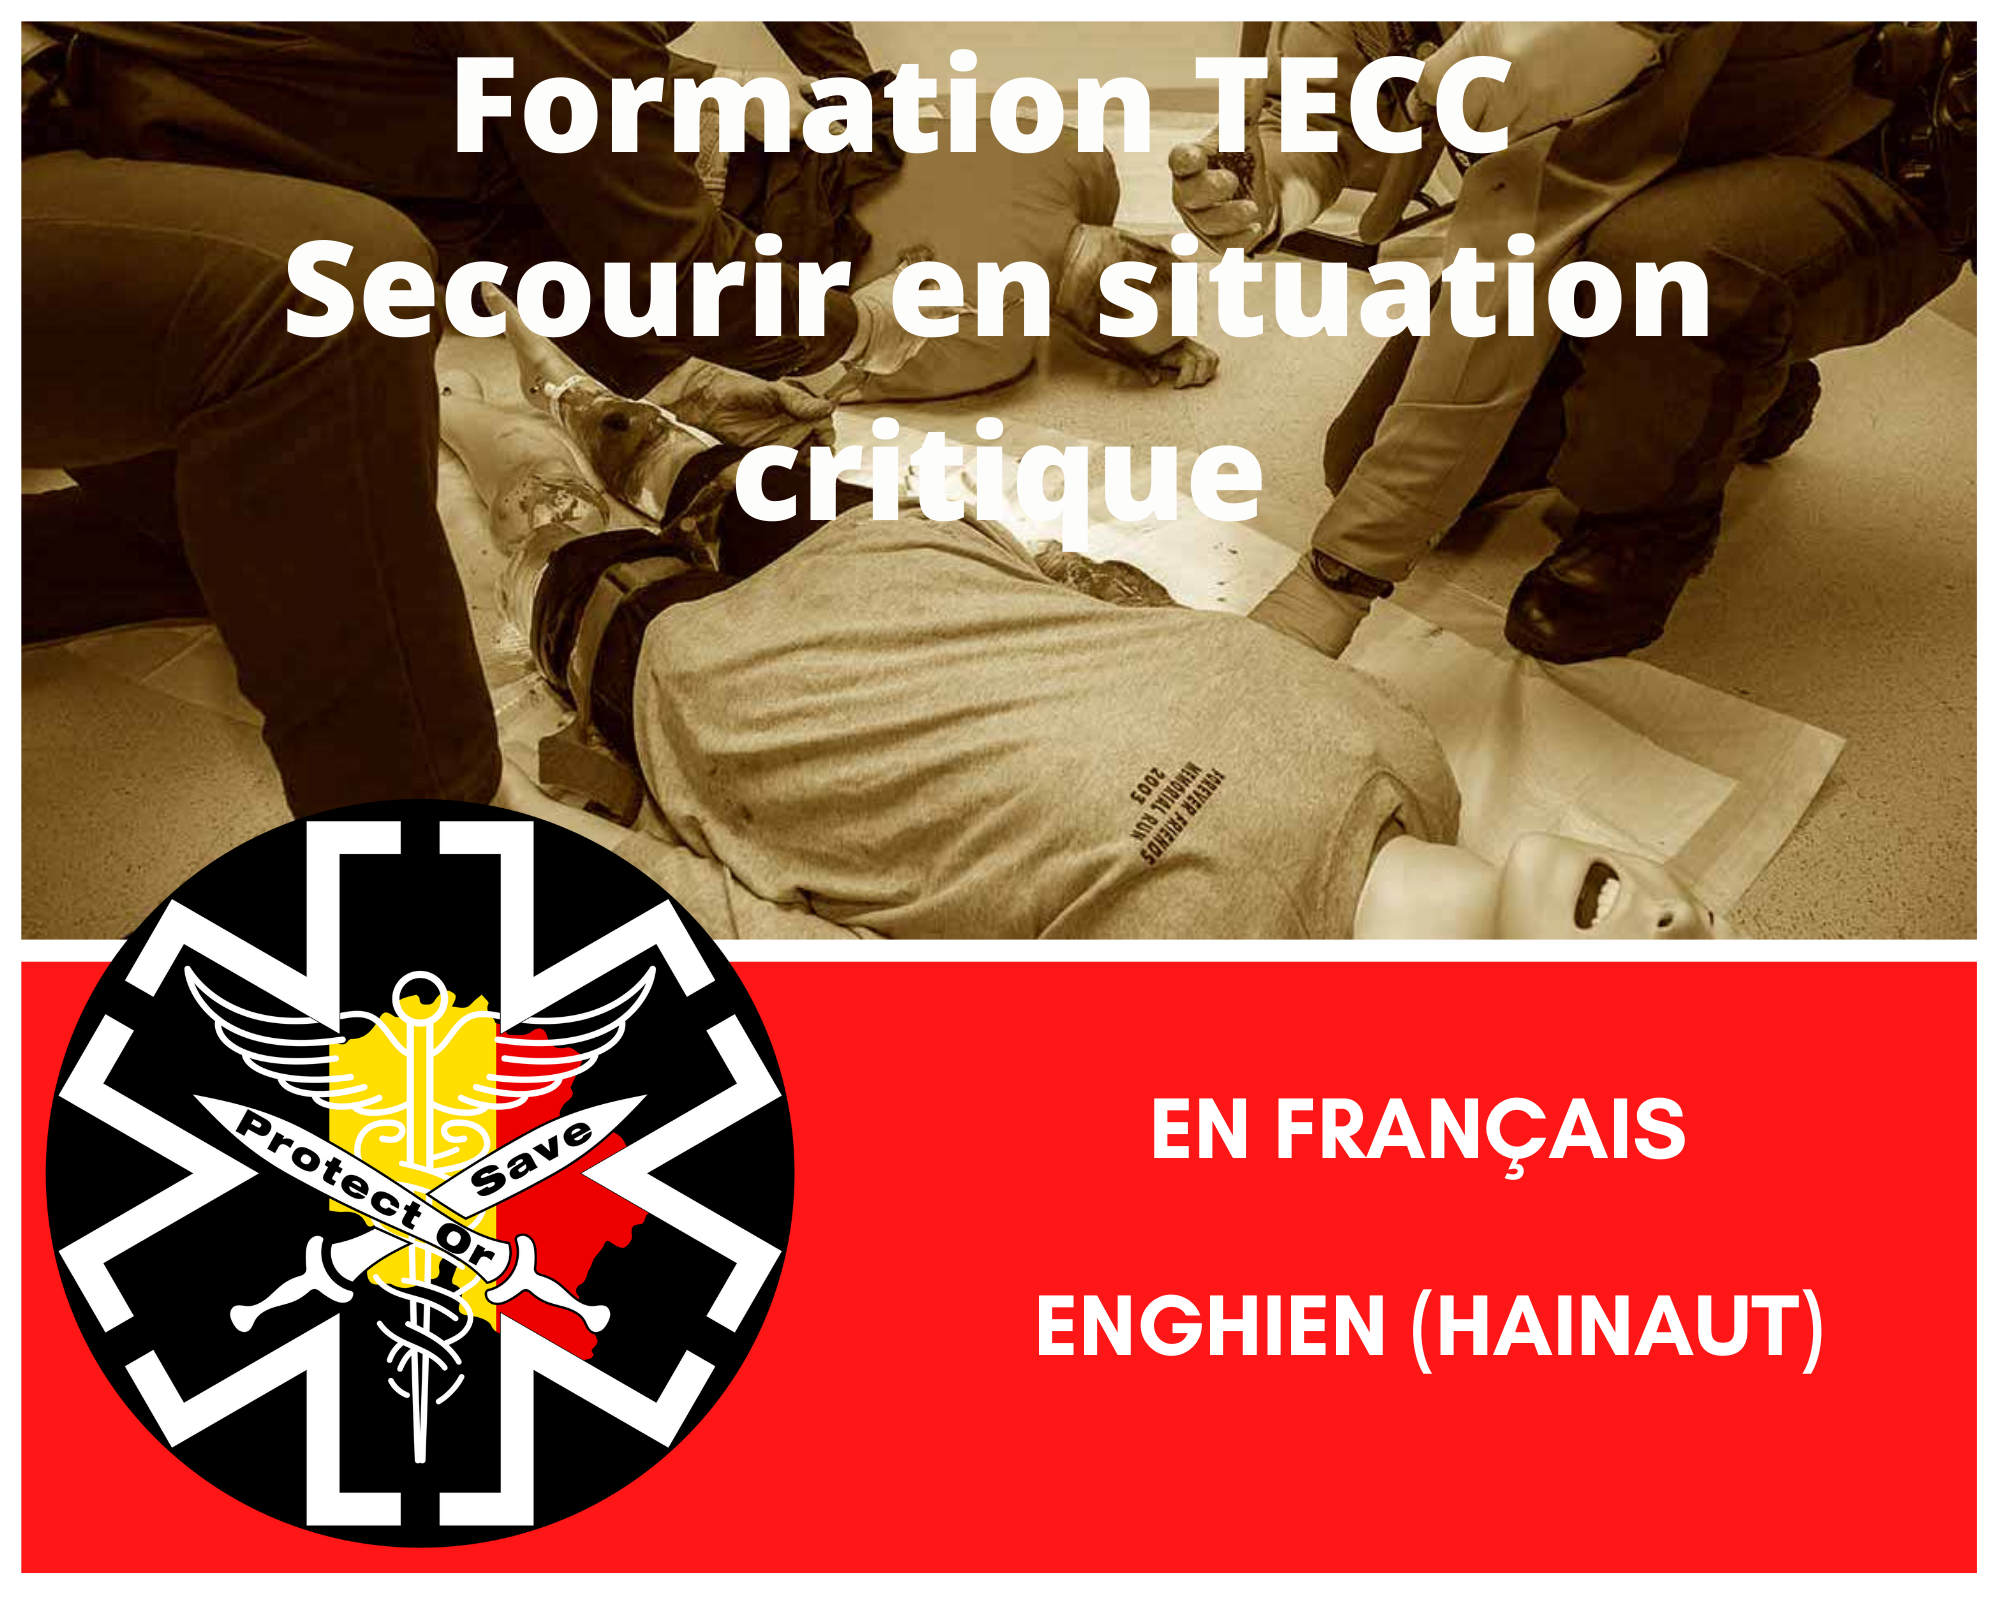 Formation TECC - Secourir en situation critique